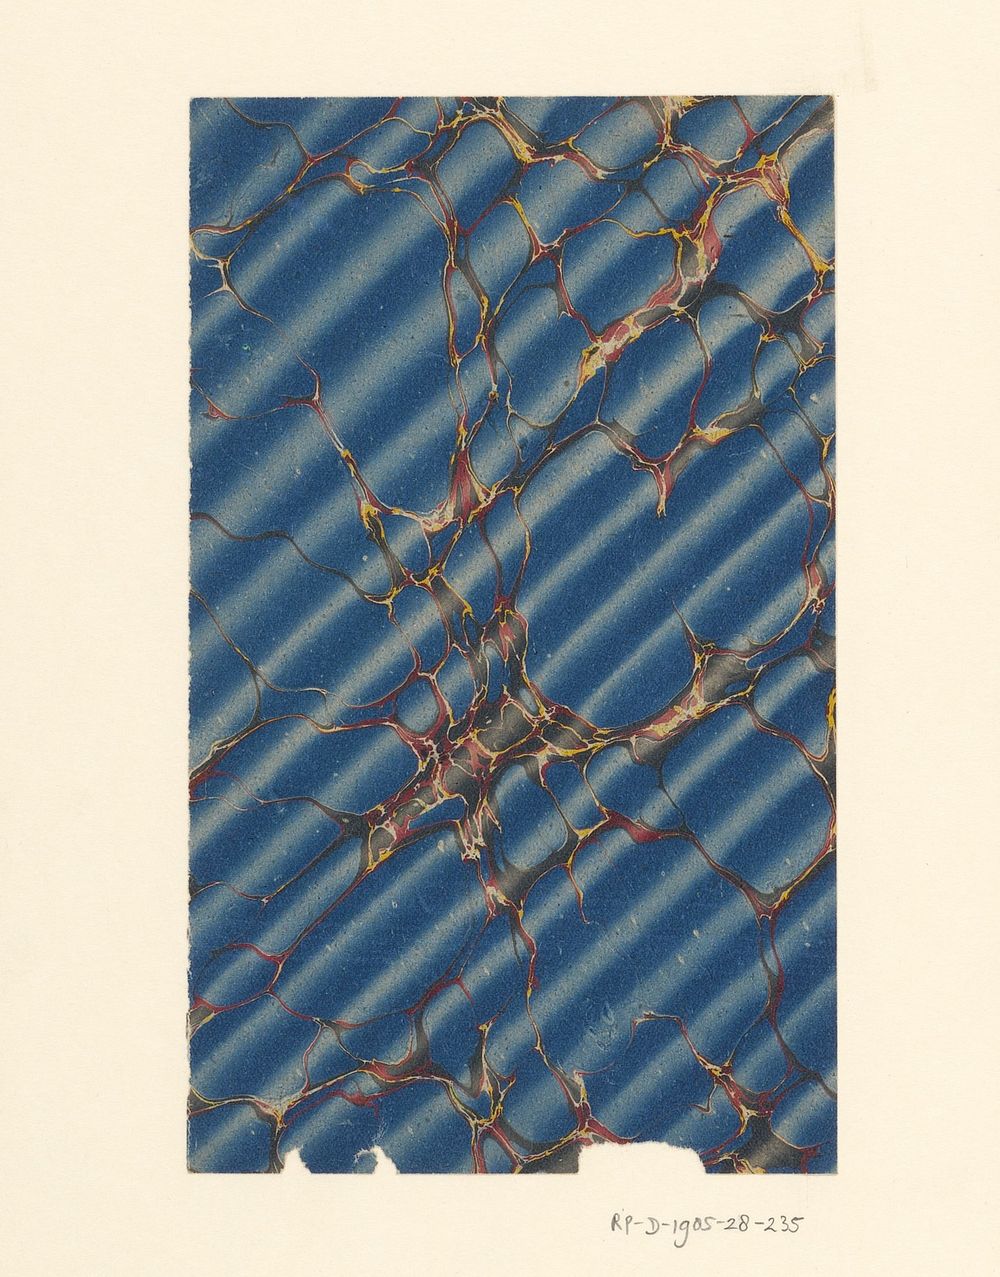 Rechtschaduwmarmer in blauw met aders in rood, grijs en geel (1700 - 1950) by anonymous